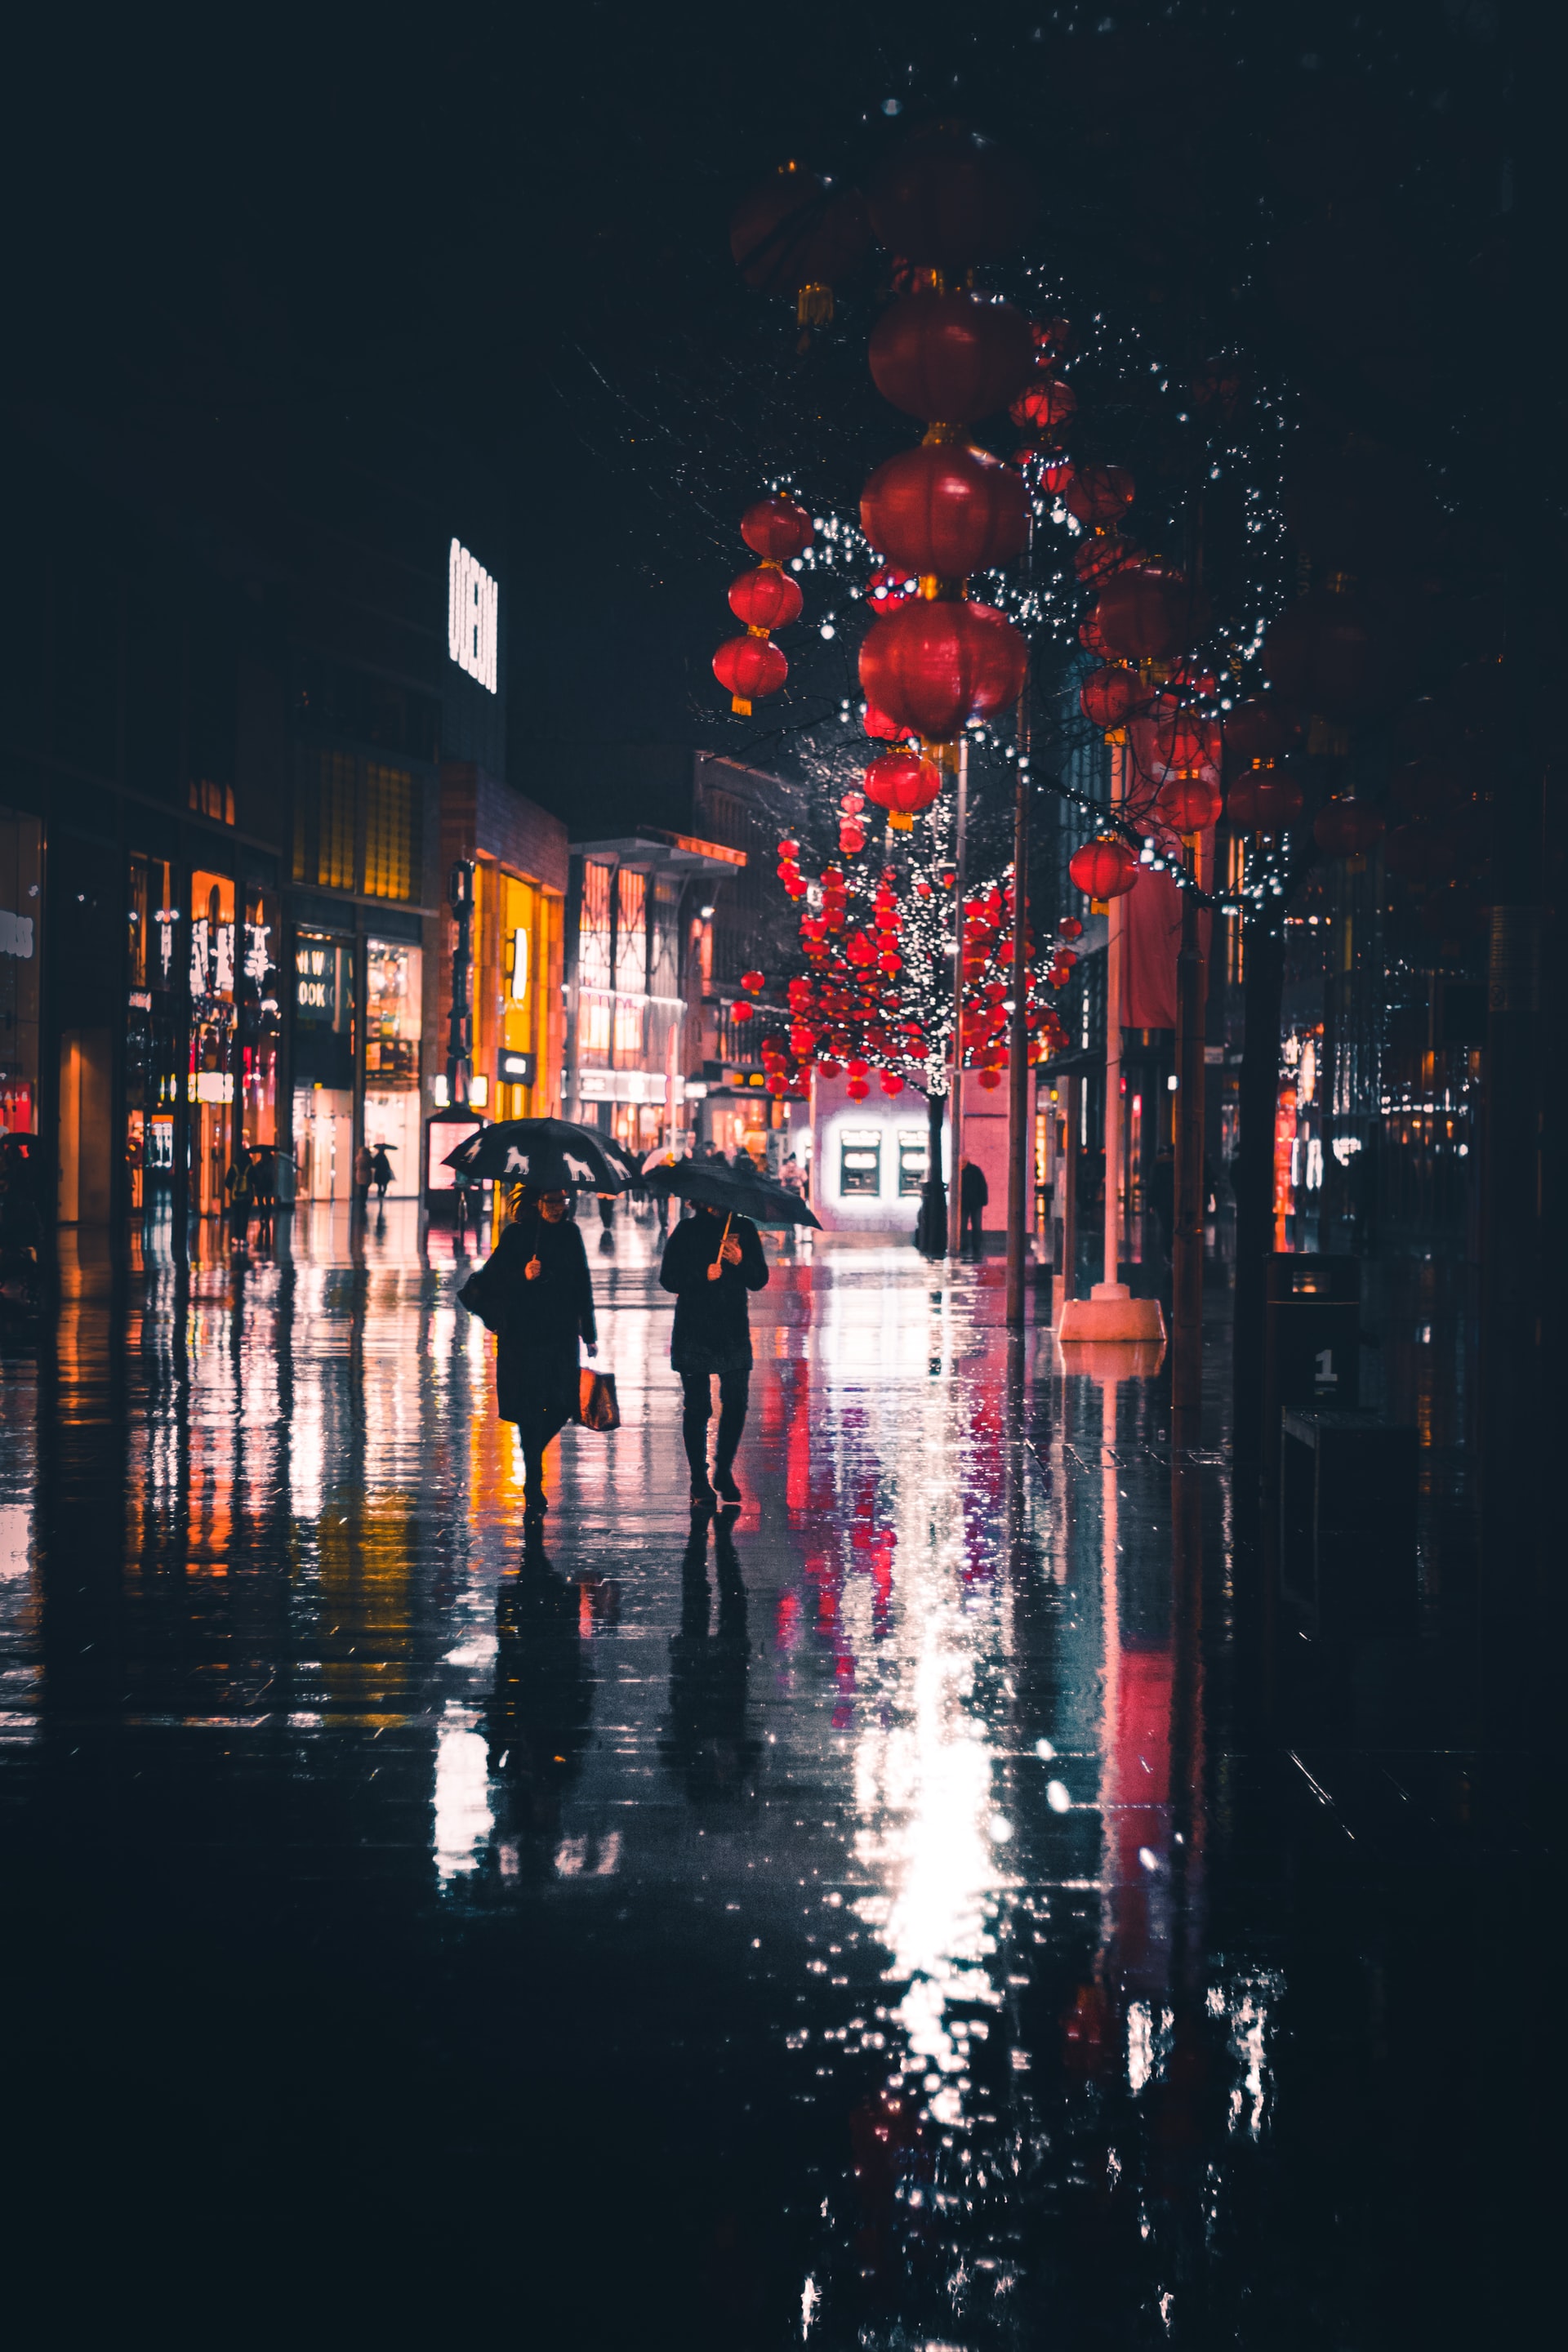 Mưa đêm buồn: Những giọt mưa nhỏ rơi xuống từng nhịp, âm nhạc bên trong cơn mưa trở nên tuyệt vời hơn bao giờ hết. Bức ảnh này sẽ giúp bạn có được trải nghiệm hoàn hảo nhất, trong đêm mưa buồn và ấm áp.